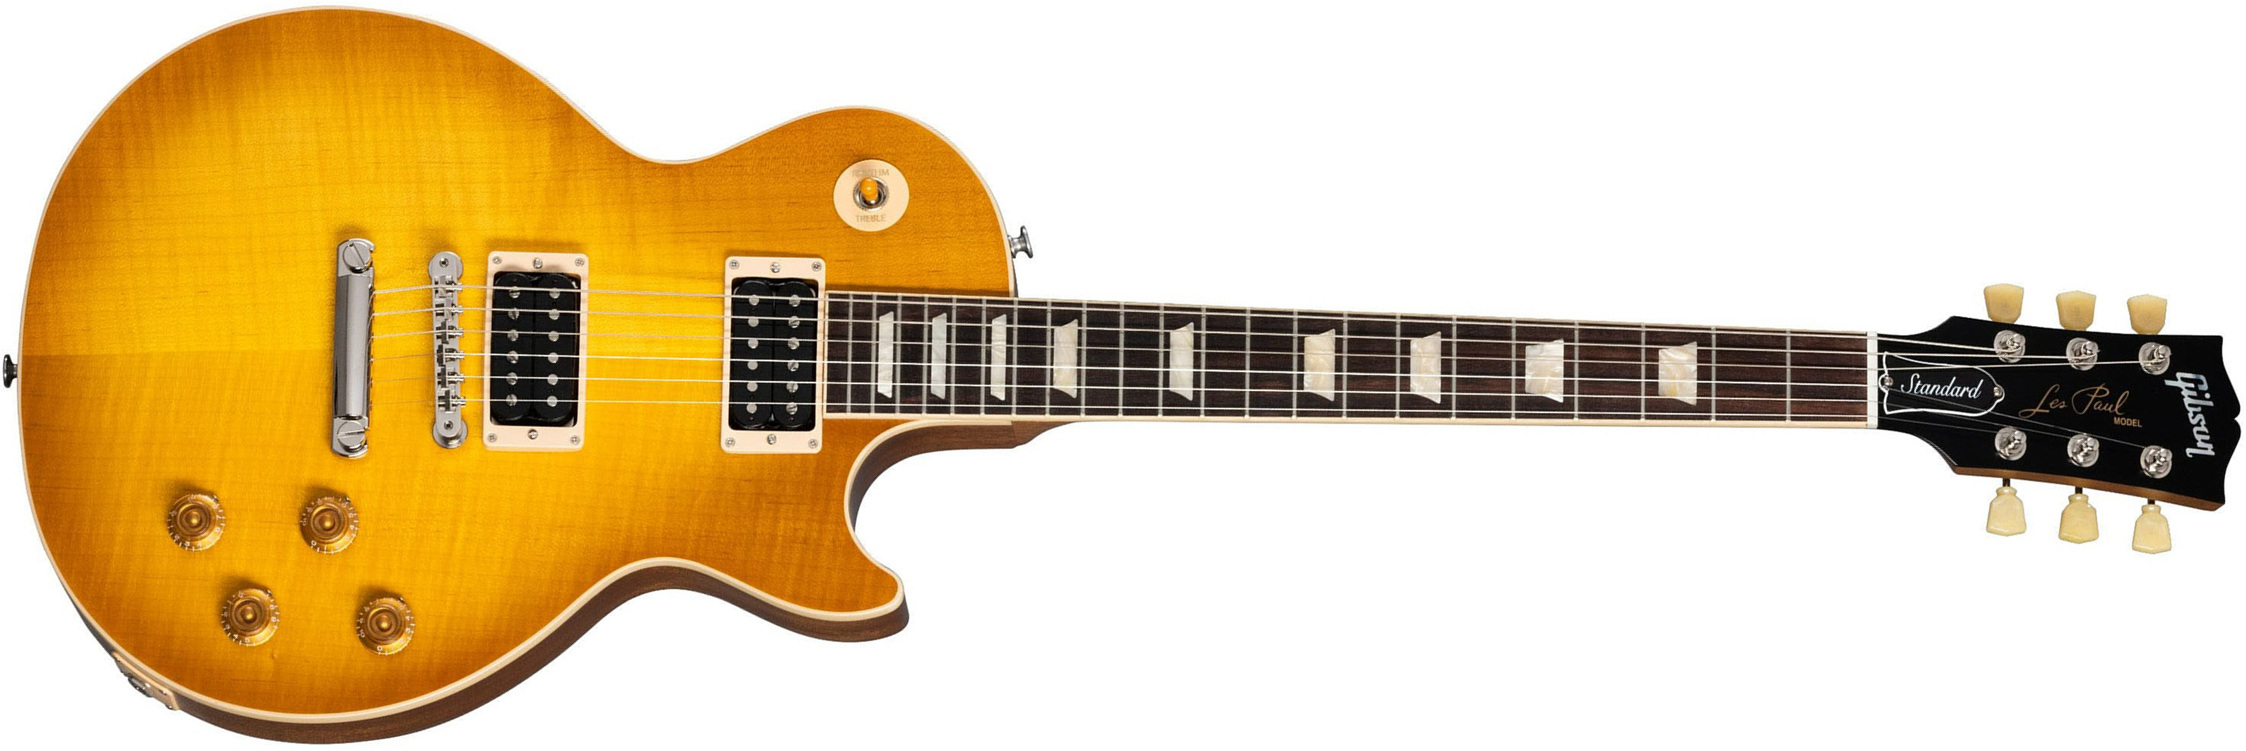 Gibson Les Paul Standard 50s Faded Original 2h Ht Rw - Vintage Honey Burst - Guitarra eléctrica de corte único. - Main picture